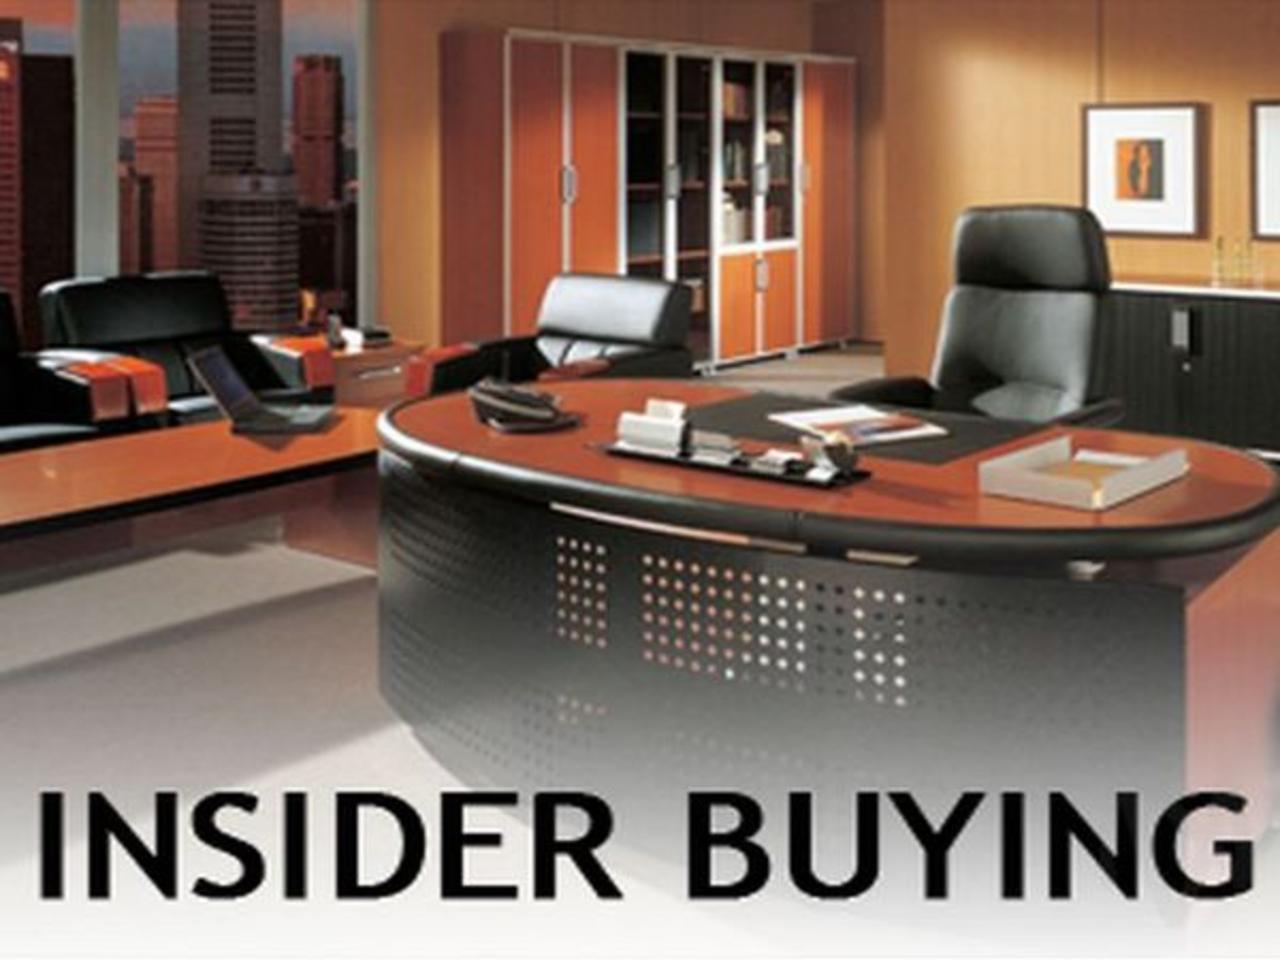 Wednesday 11/24 Insider Buying Report: DPW, W